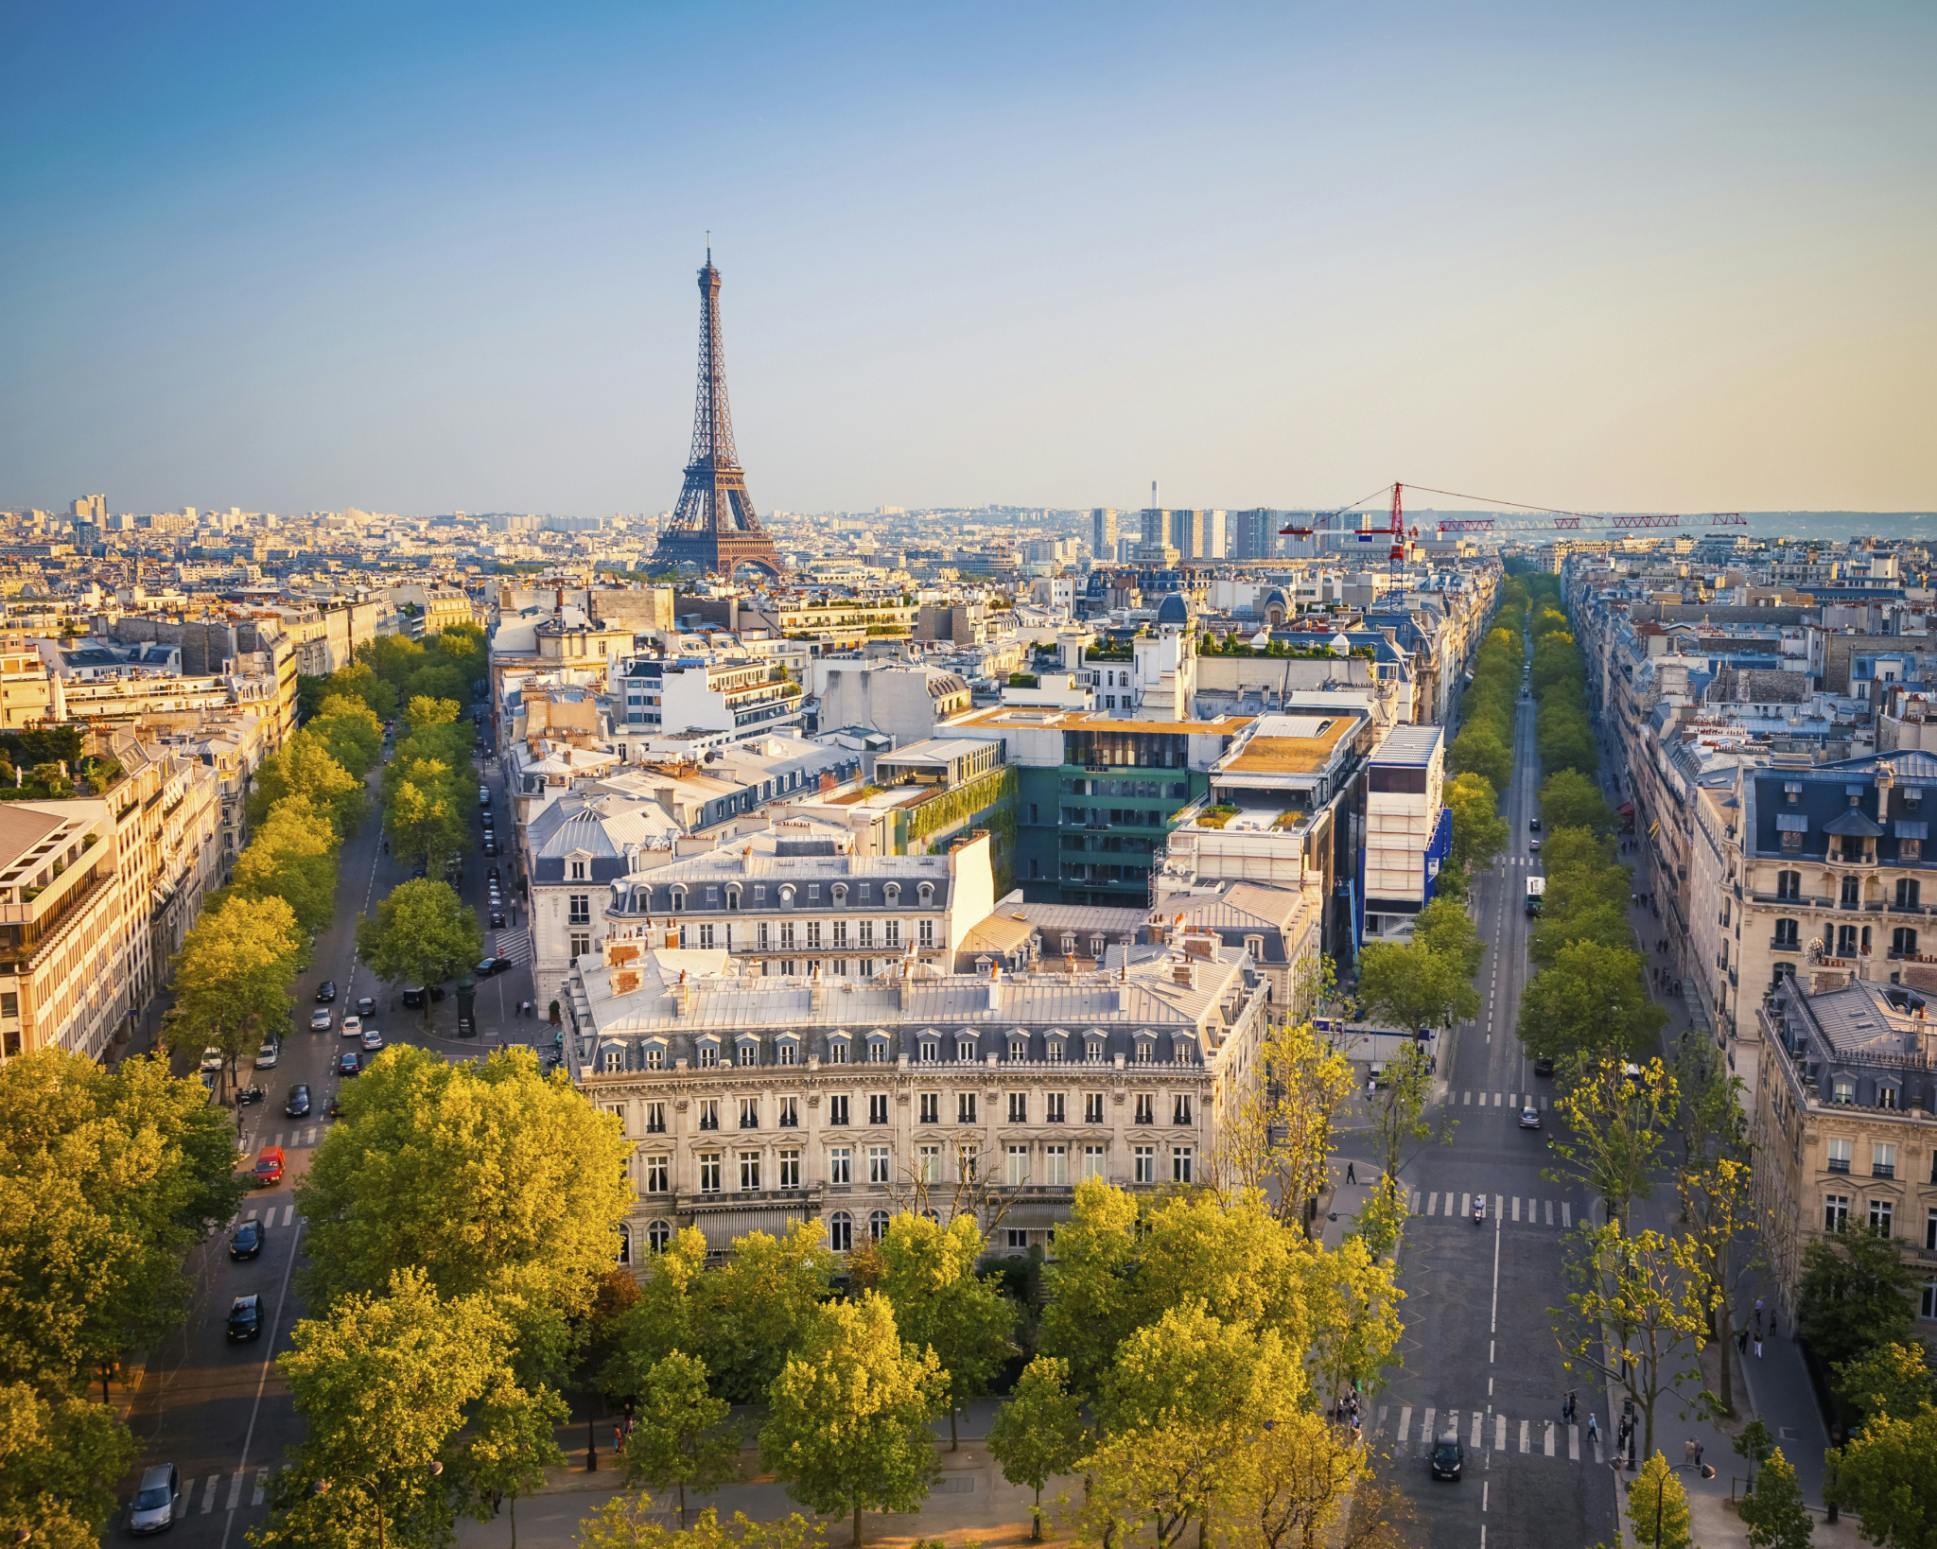 Ilmanäkymä Pariisin kaupungista. Näkymässä Eiffel Torni